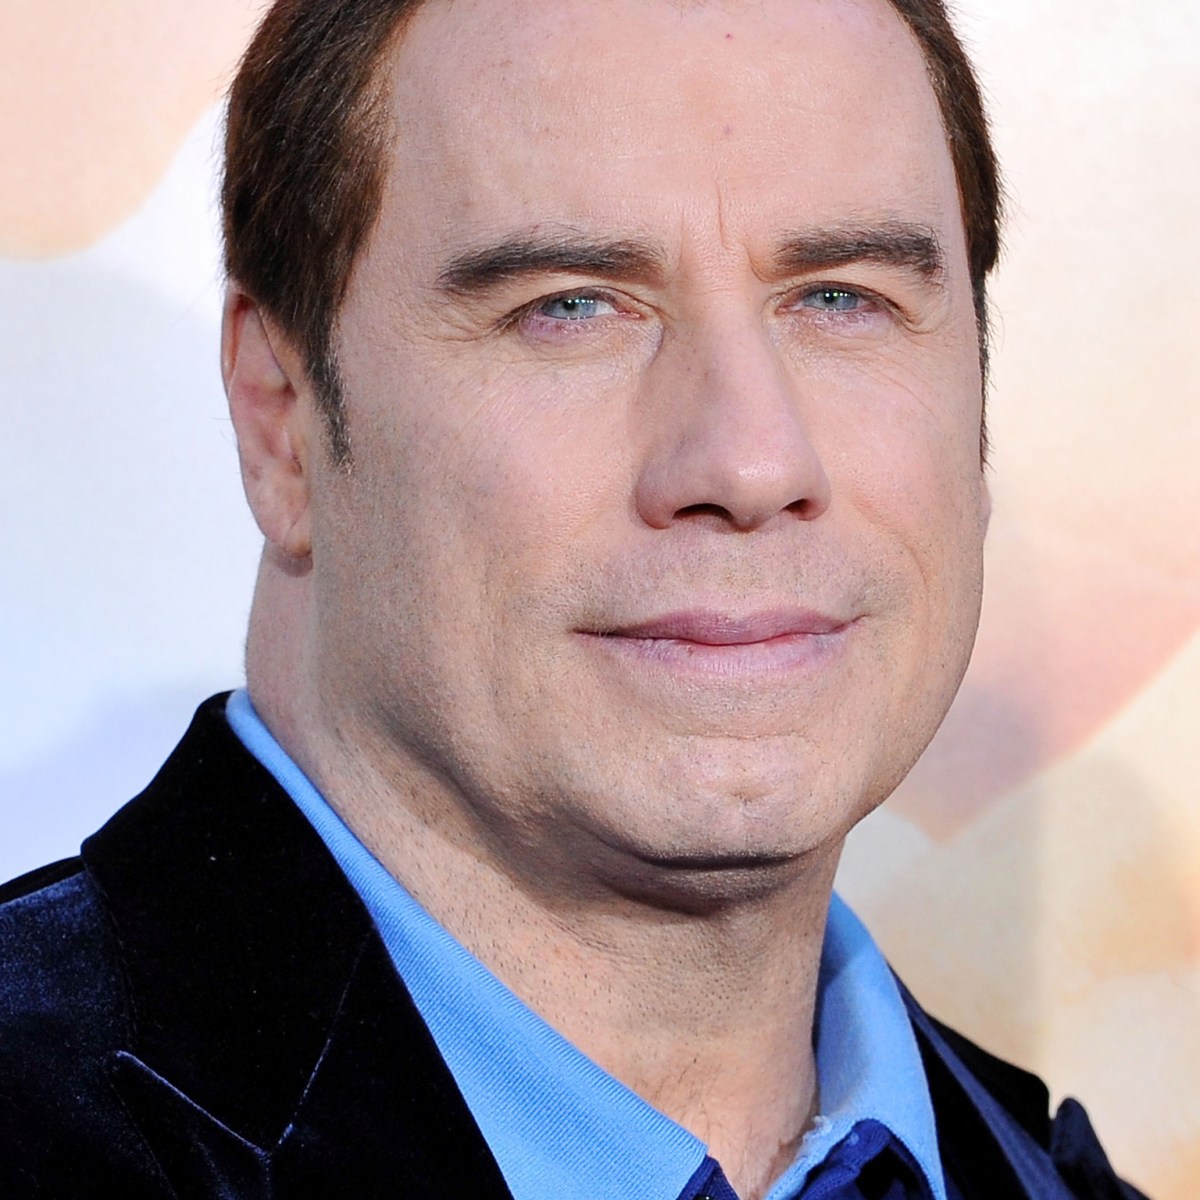 John Travolta Young - 35 Handsome Photos Of A Young John Travolta That ...